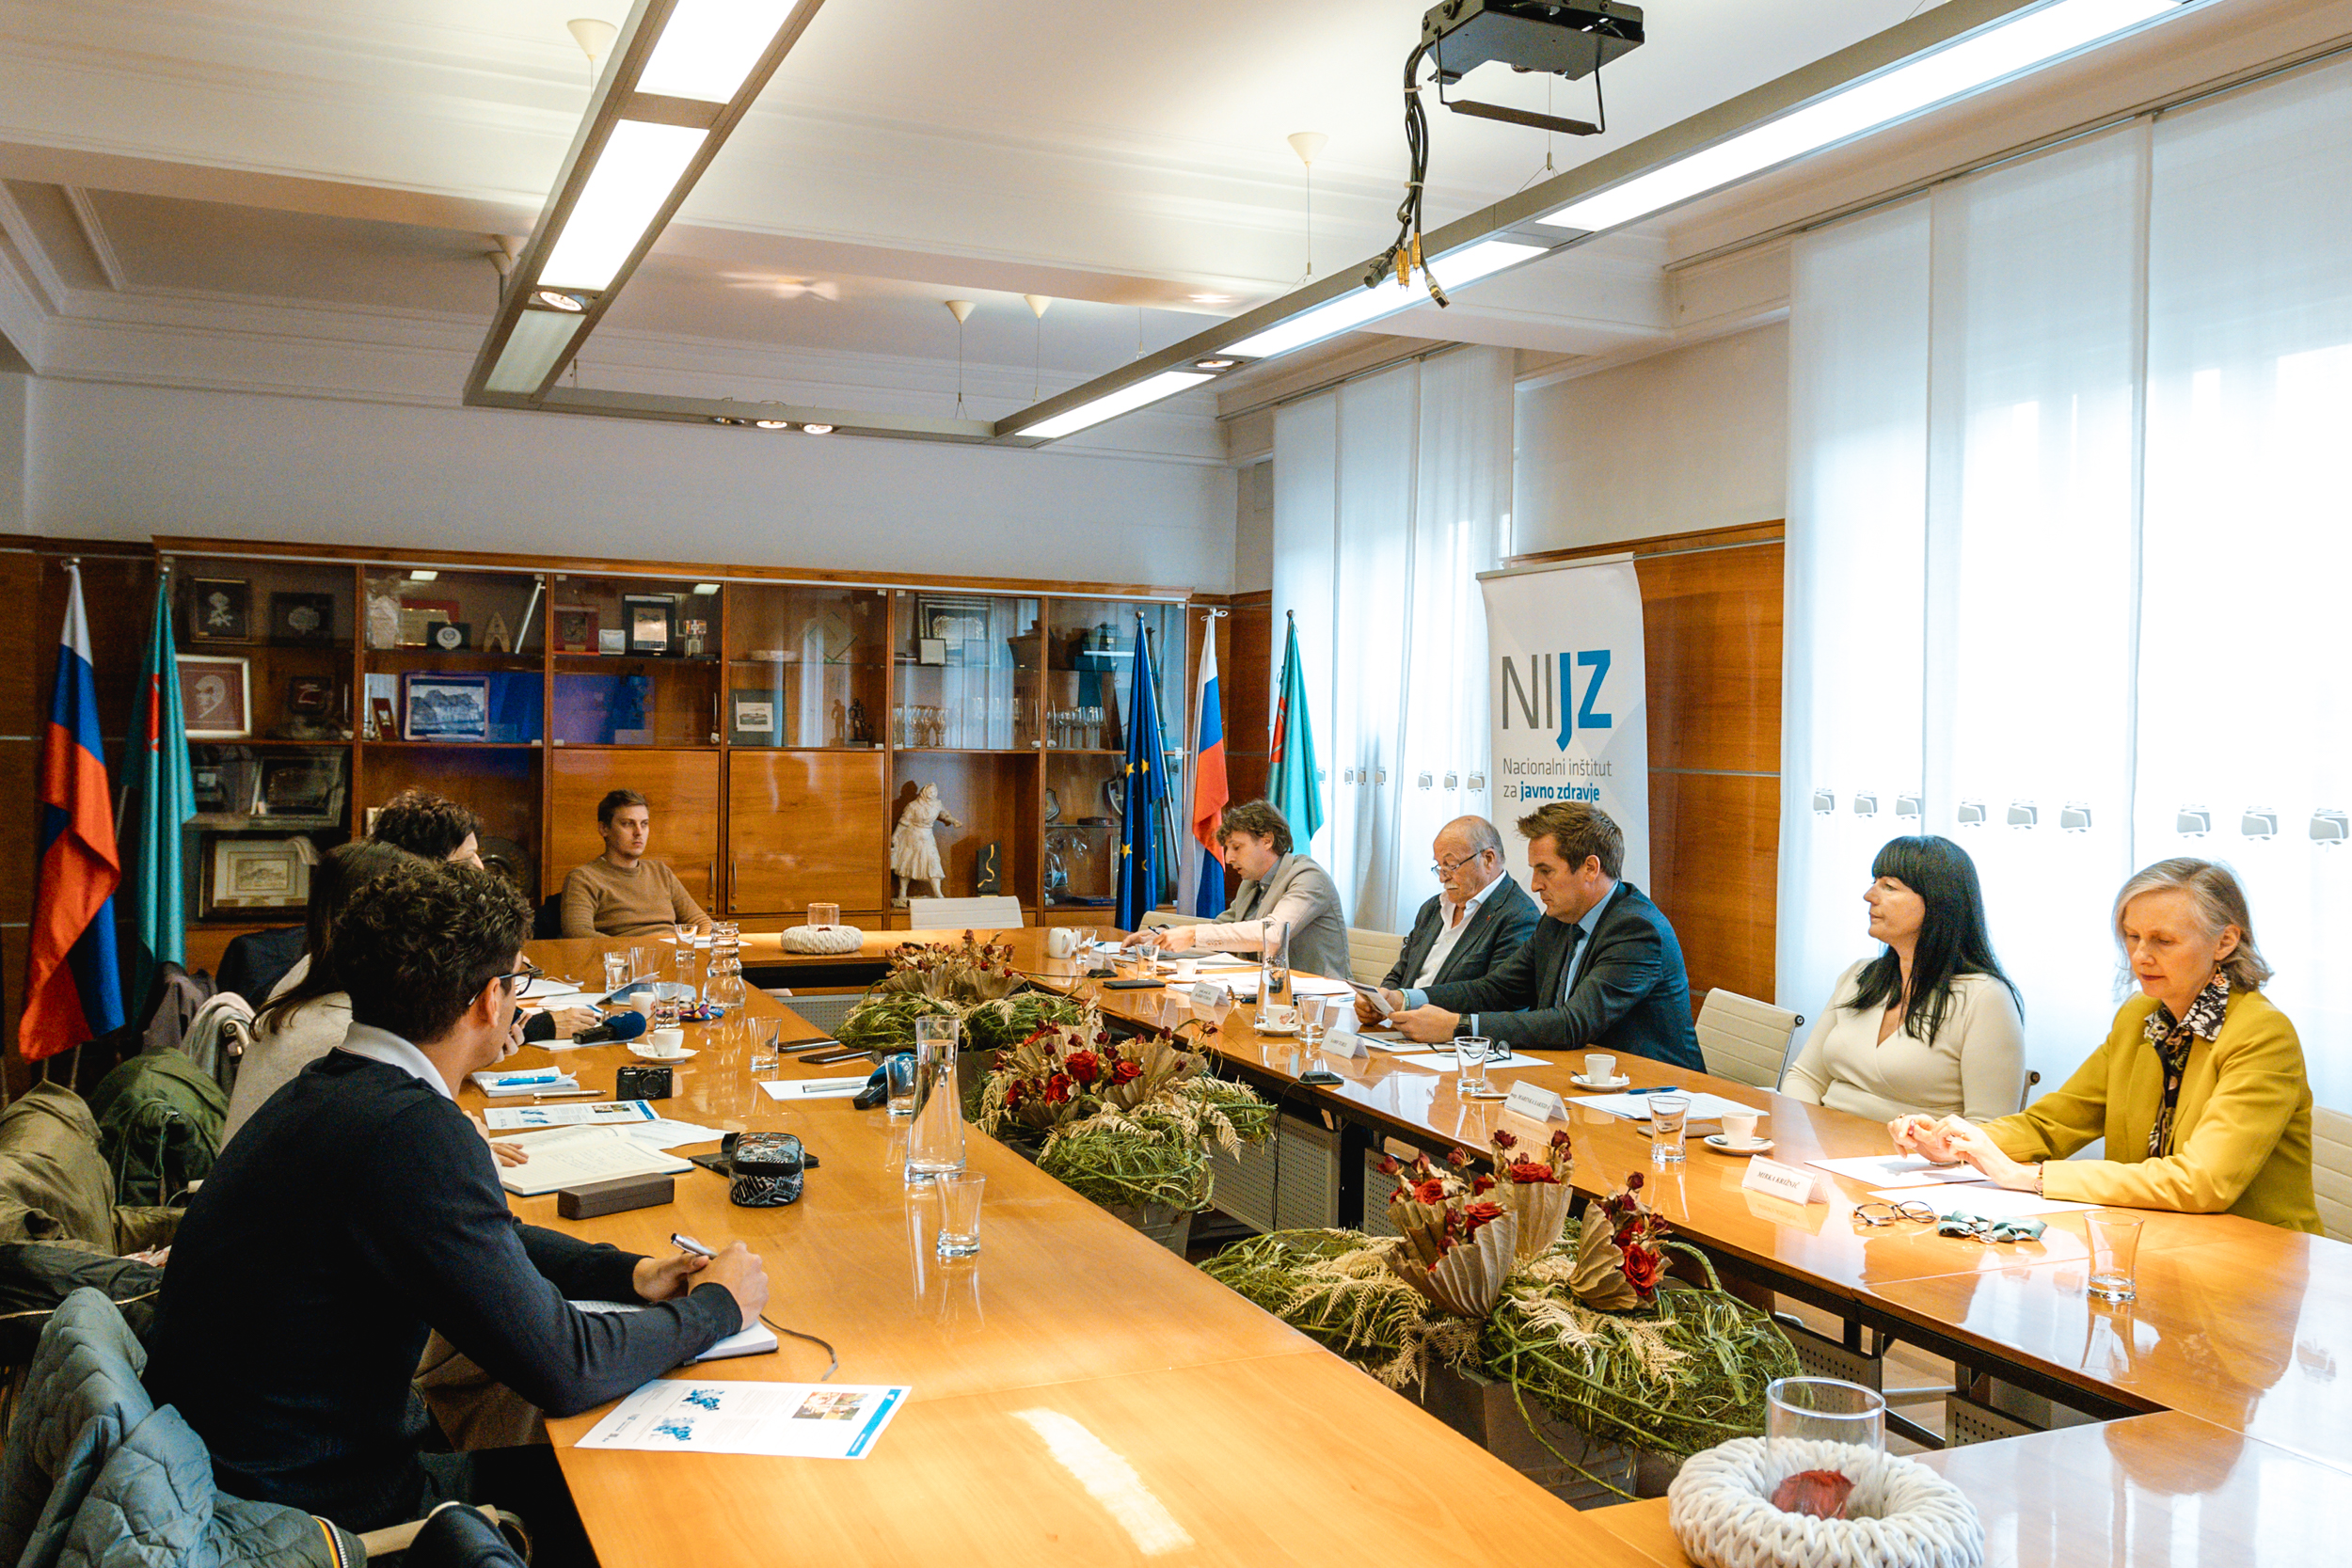 Udeleženci novinarske konference sedijo za veliko mizo v Stekleni dvorani na Mestni občini Nova Gorica